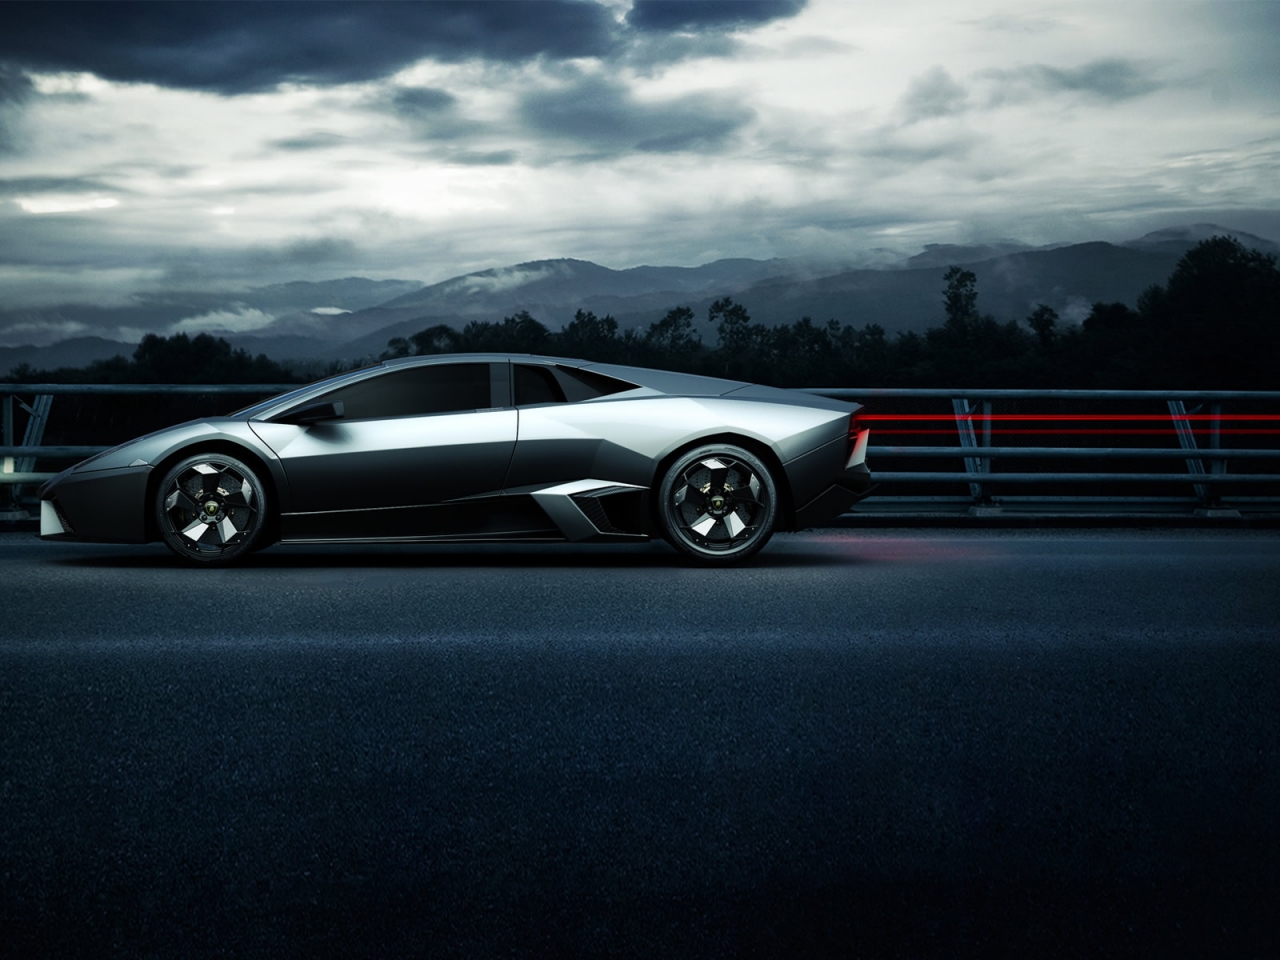 Lamborghini Sport Side Angle for 1280 x 960 resolution